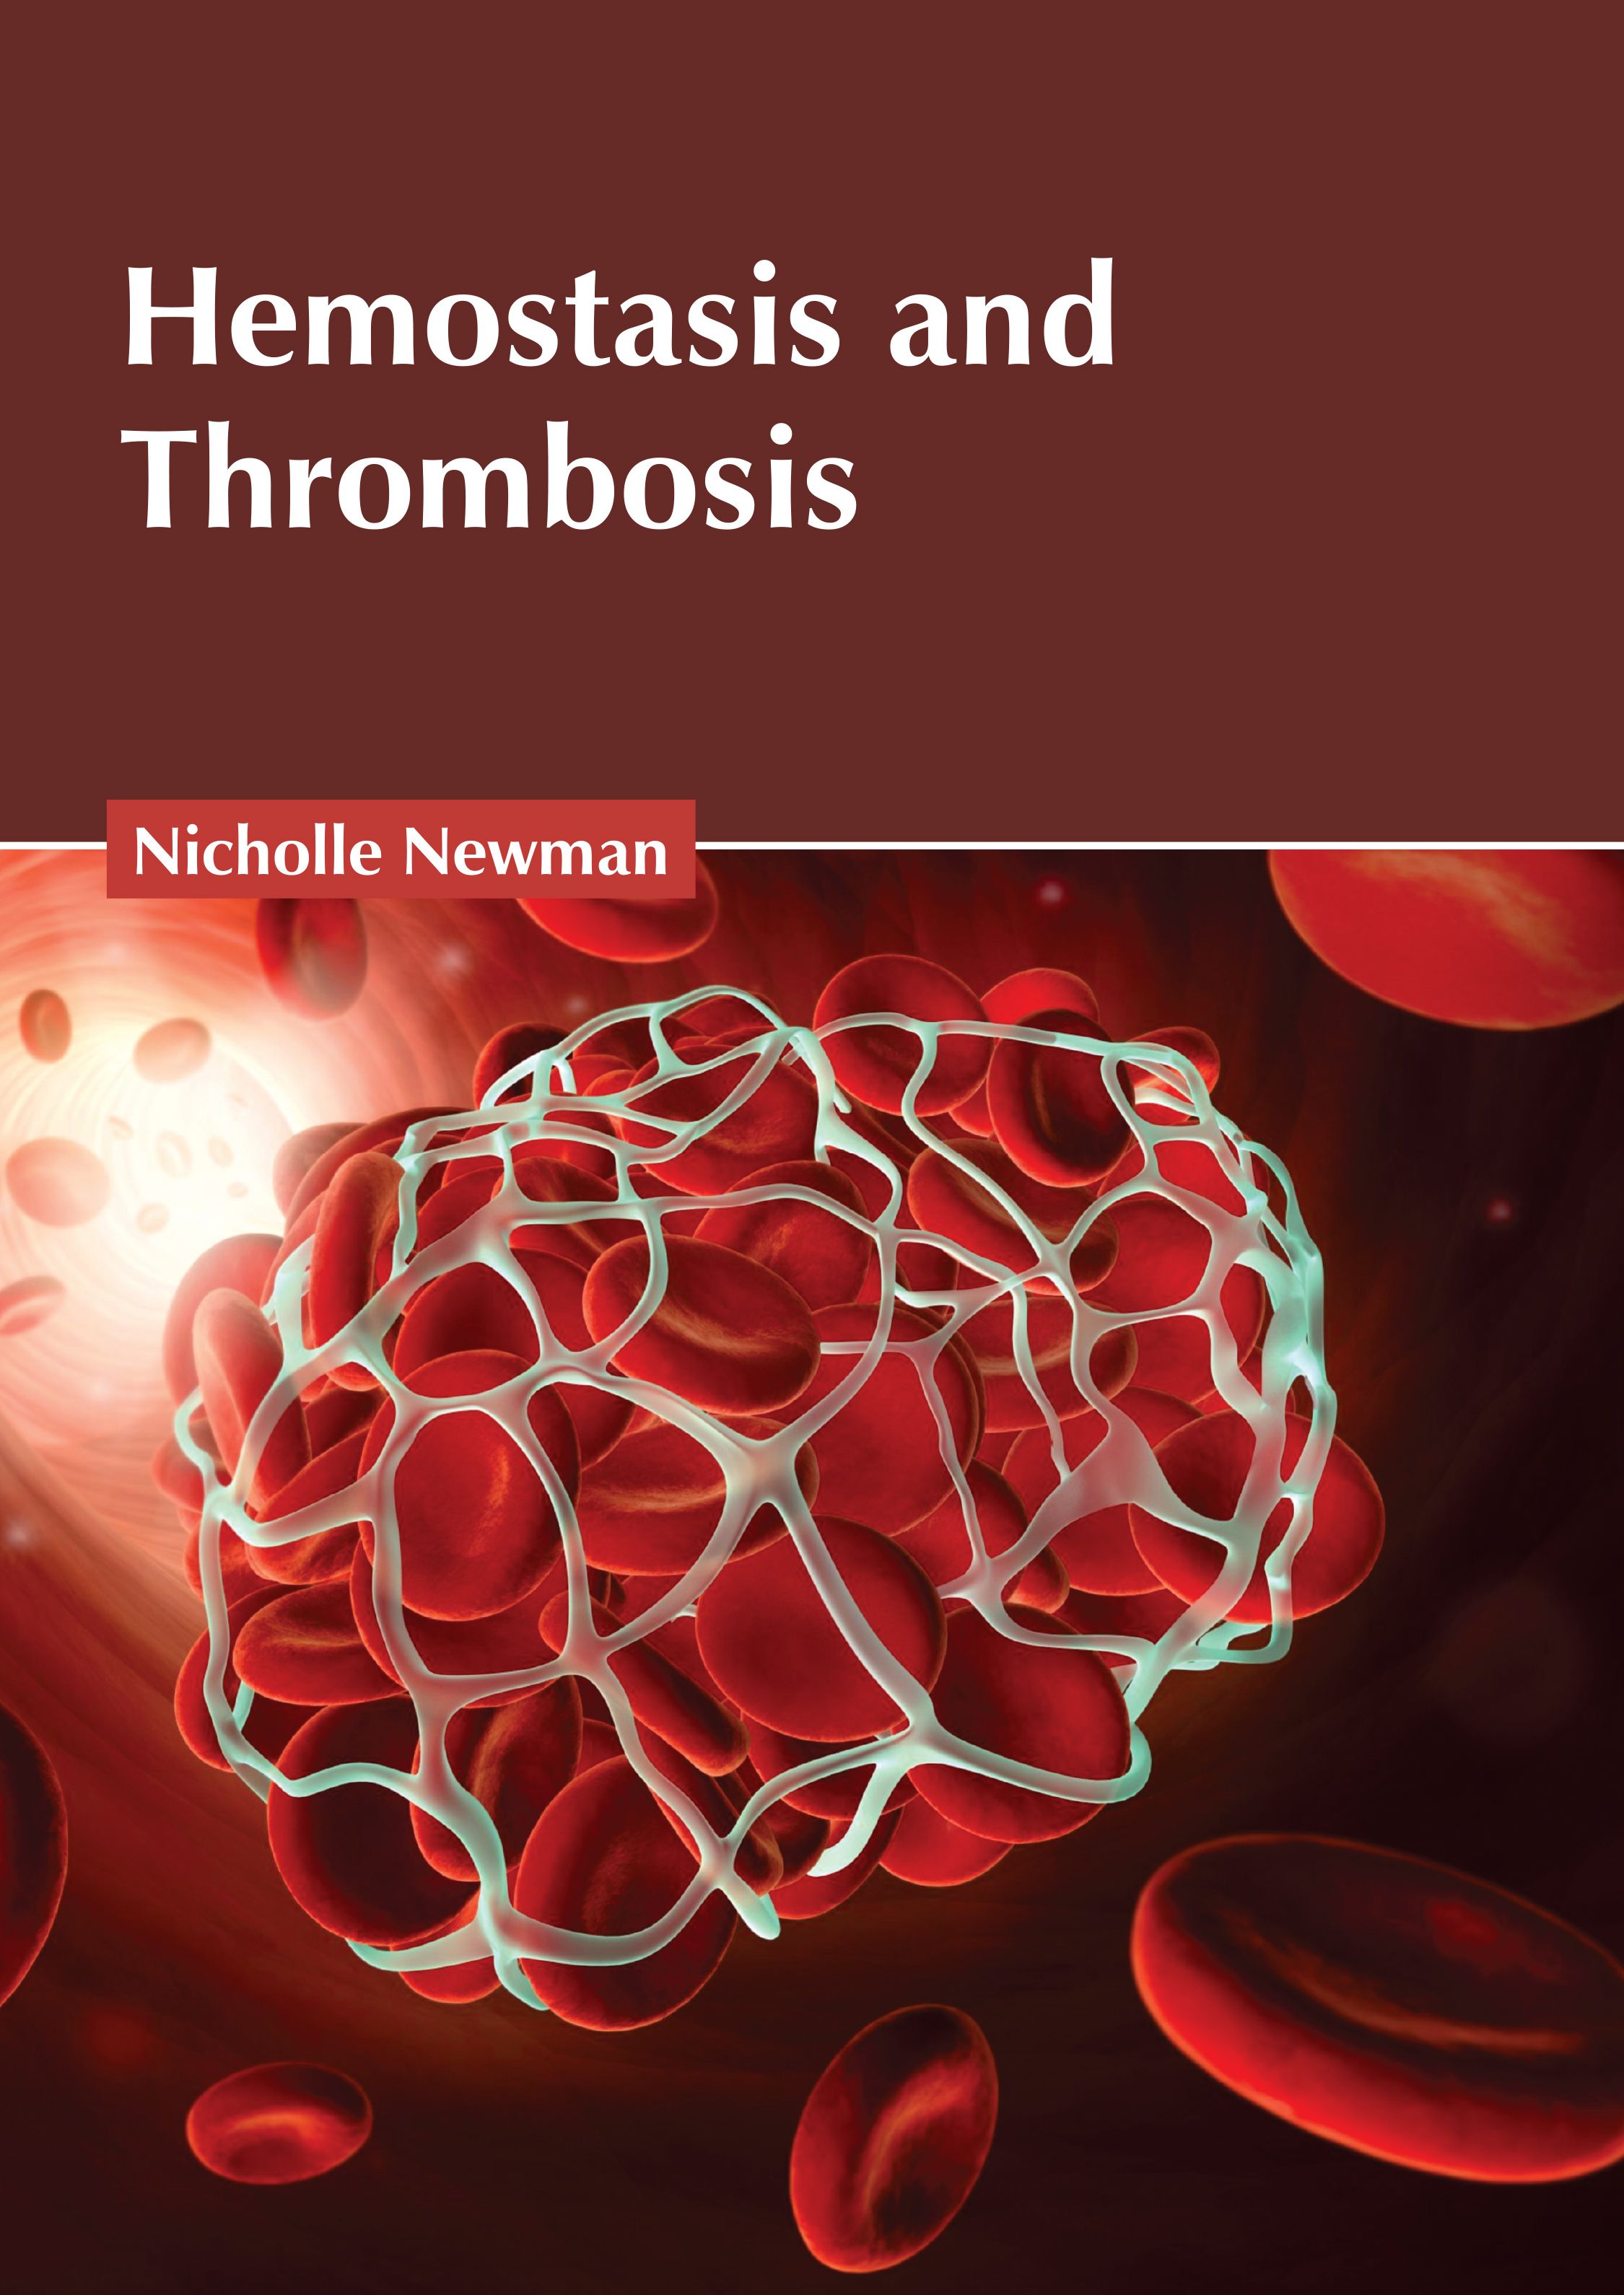 HEMOSTASIS AND THROMBOSIS